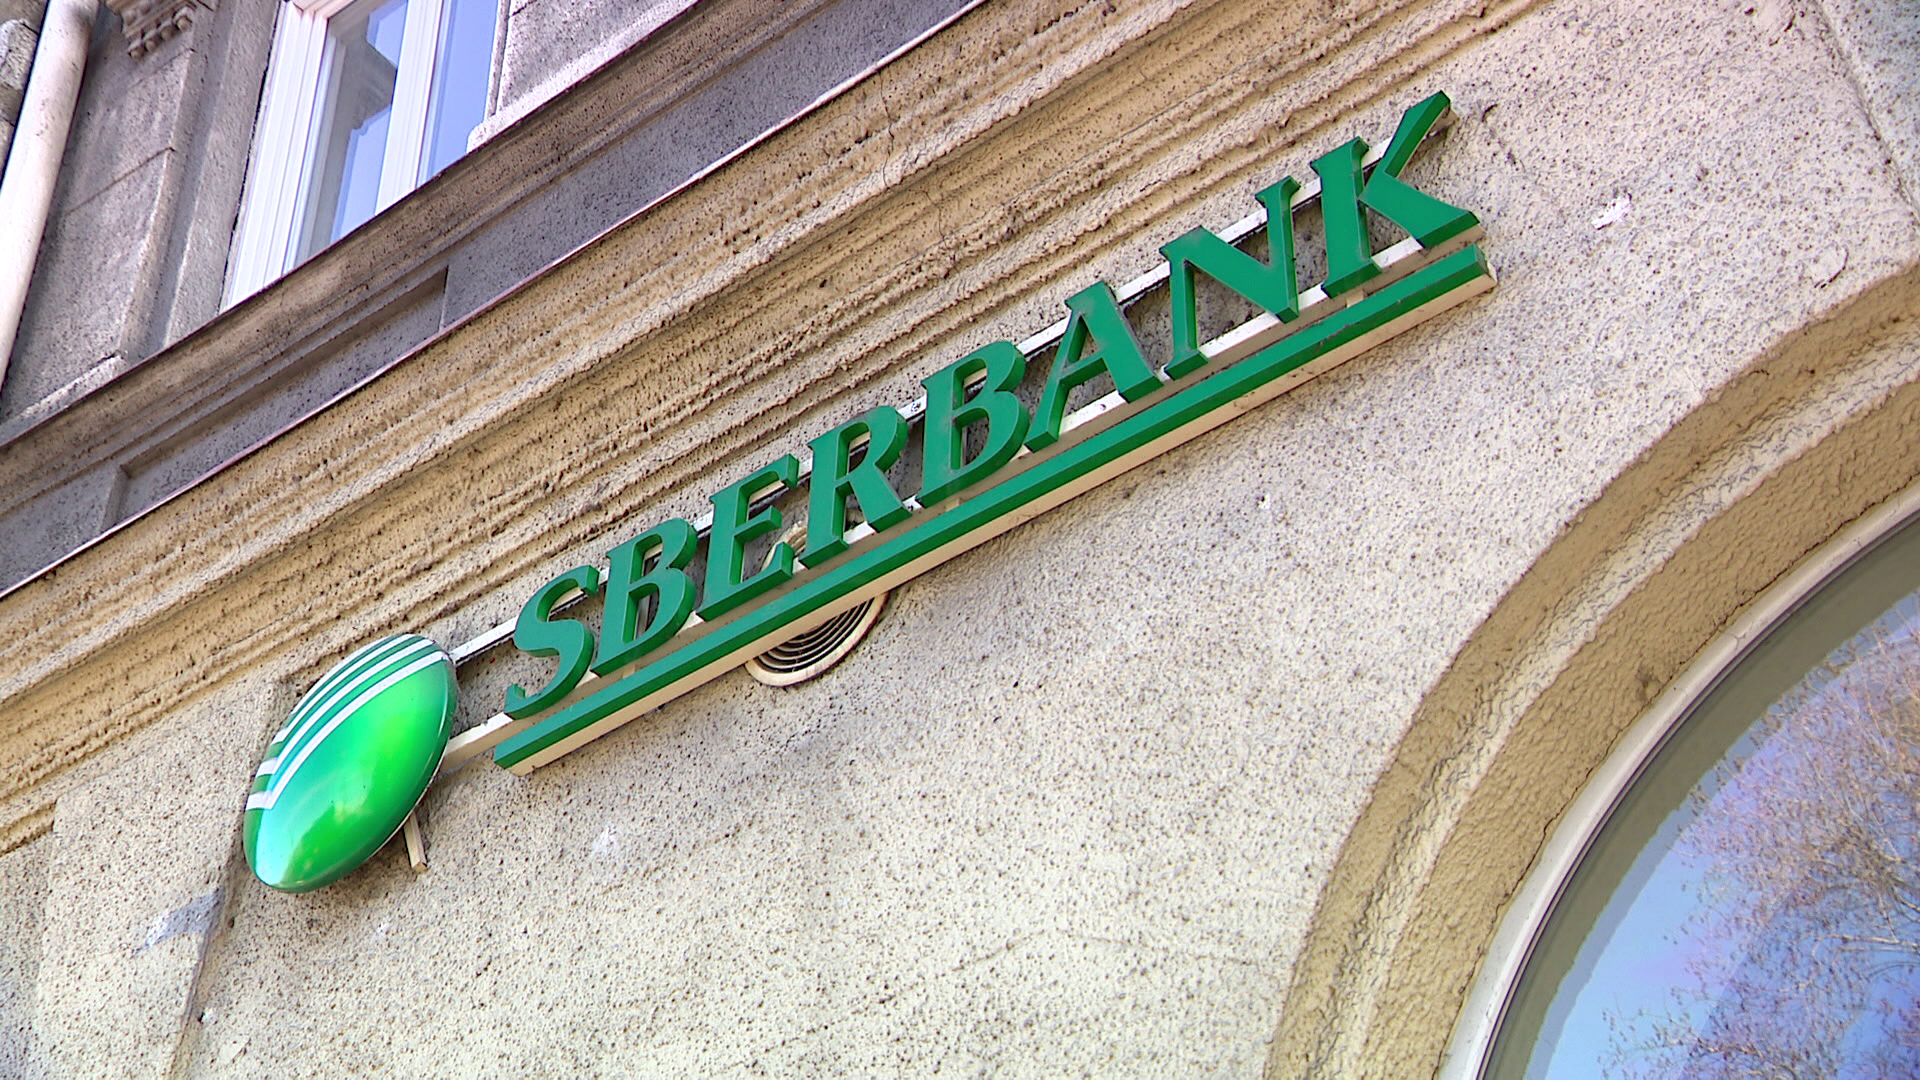 Megkezdődött a Sberbankos ügyfelek kifizetése